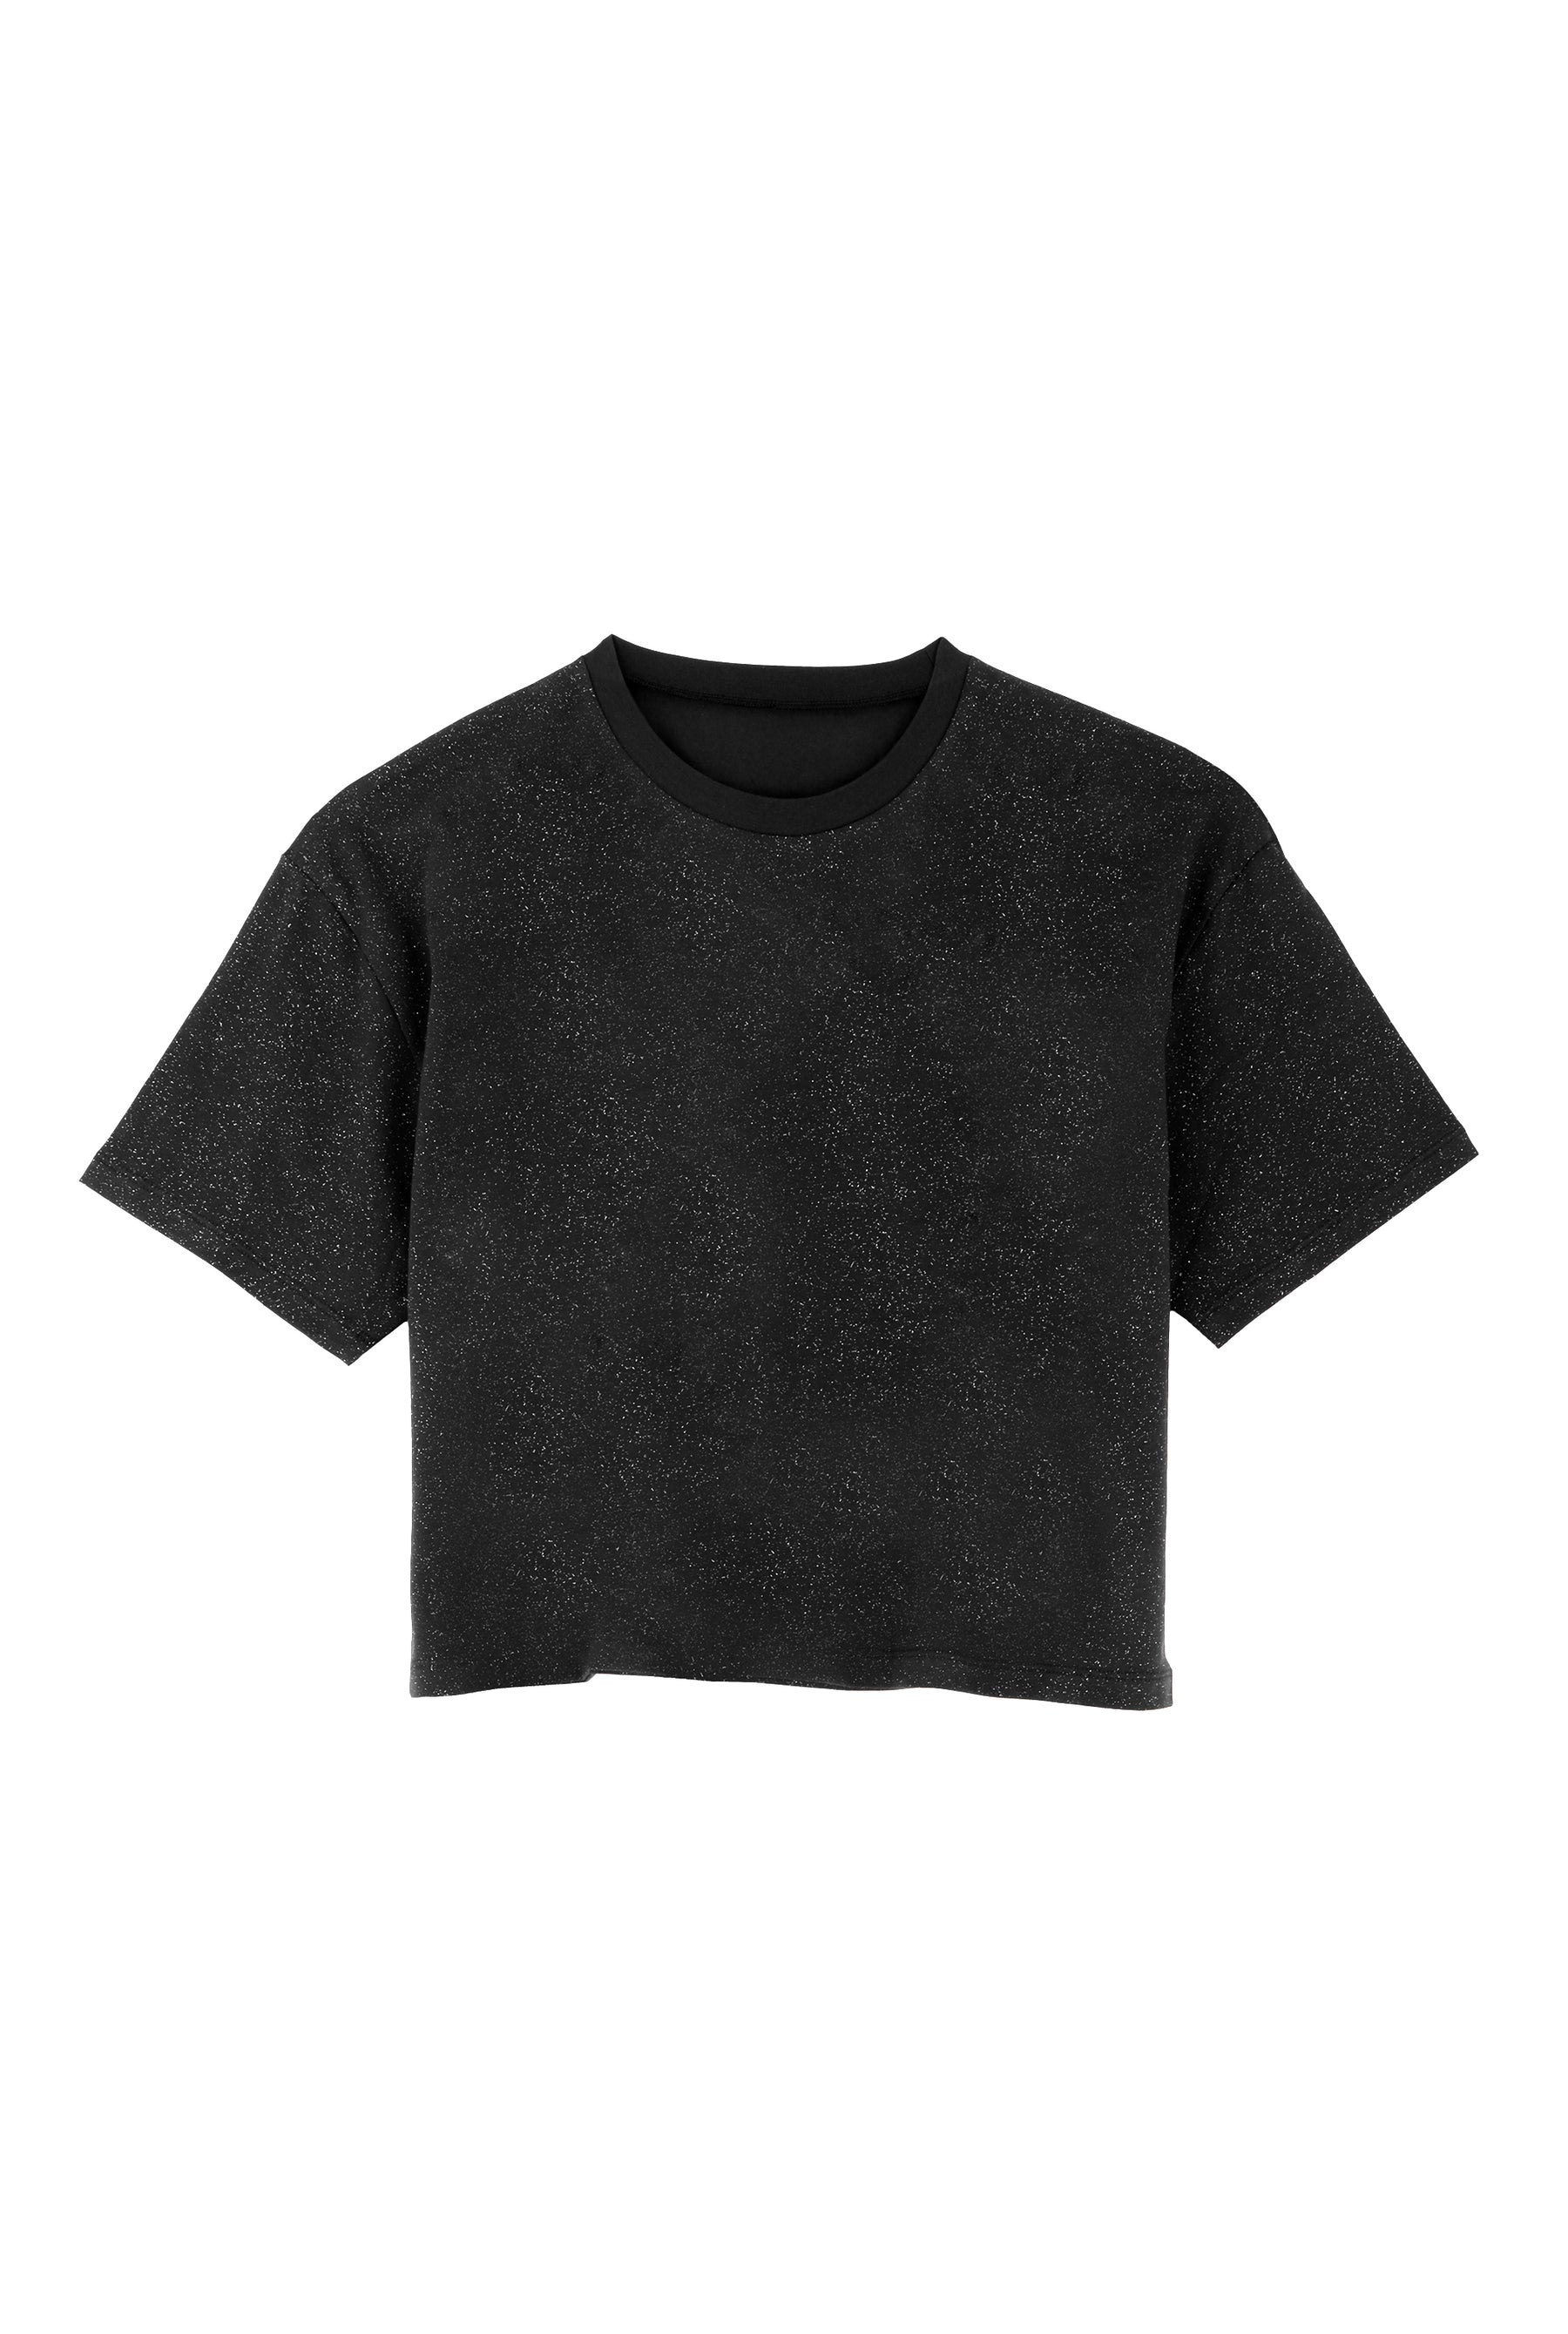 T-shirt coton BIO - Paillettes Noir